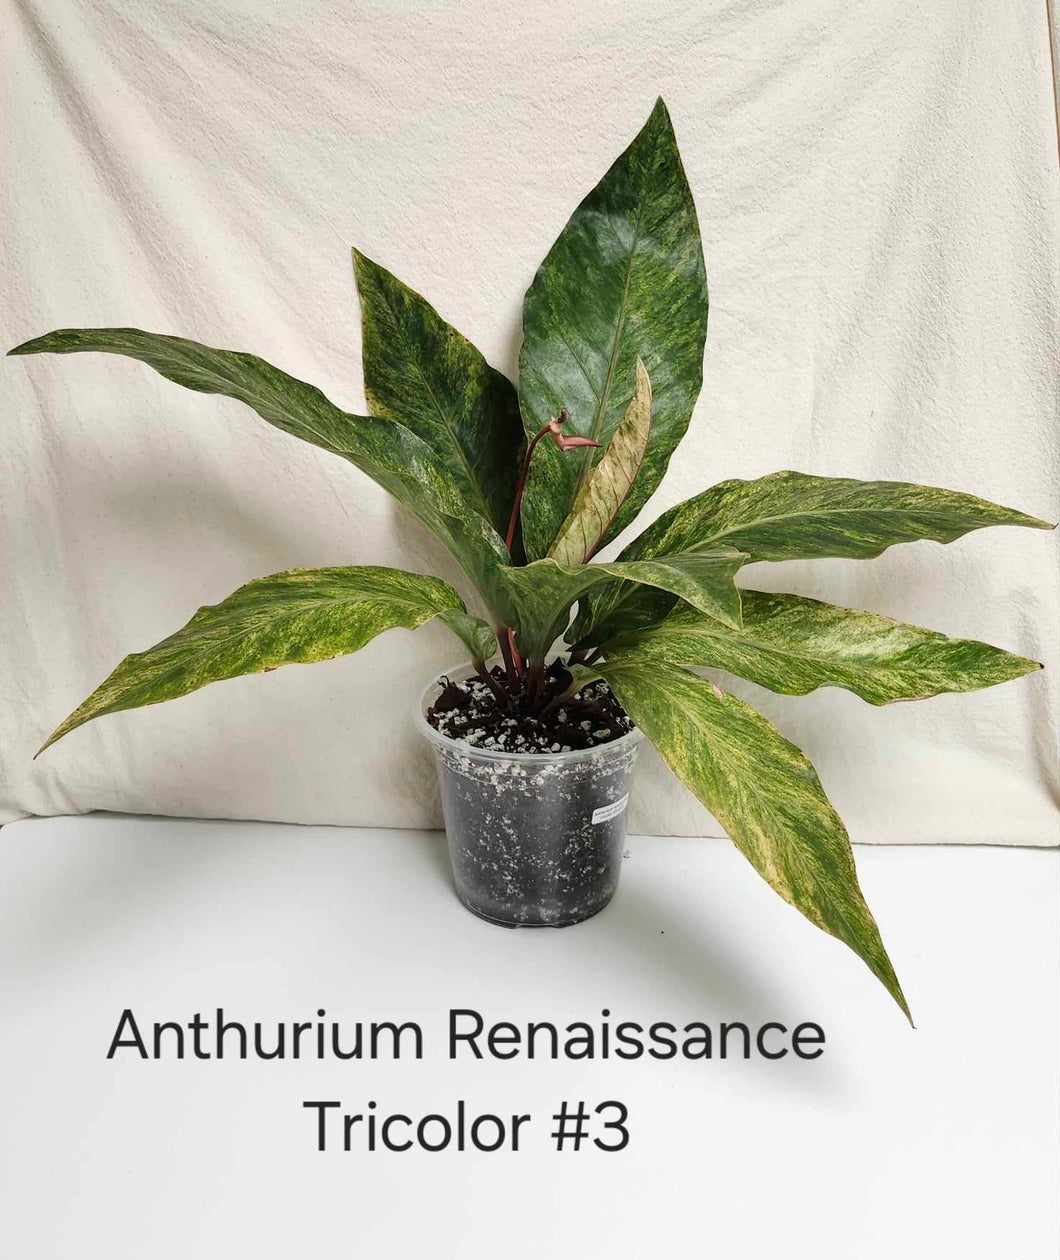 Anthurium renaissance tricolor #3